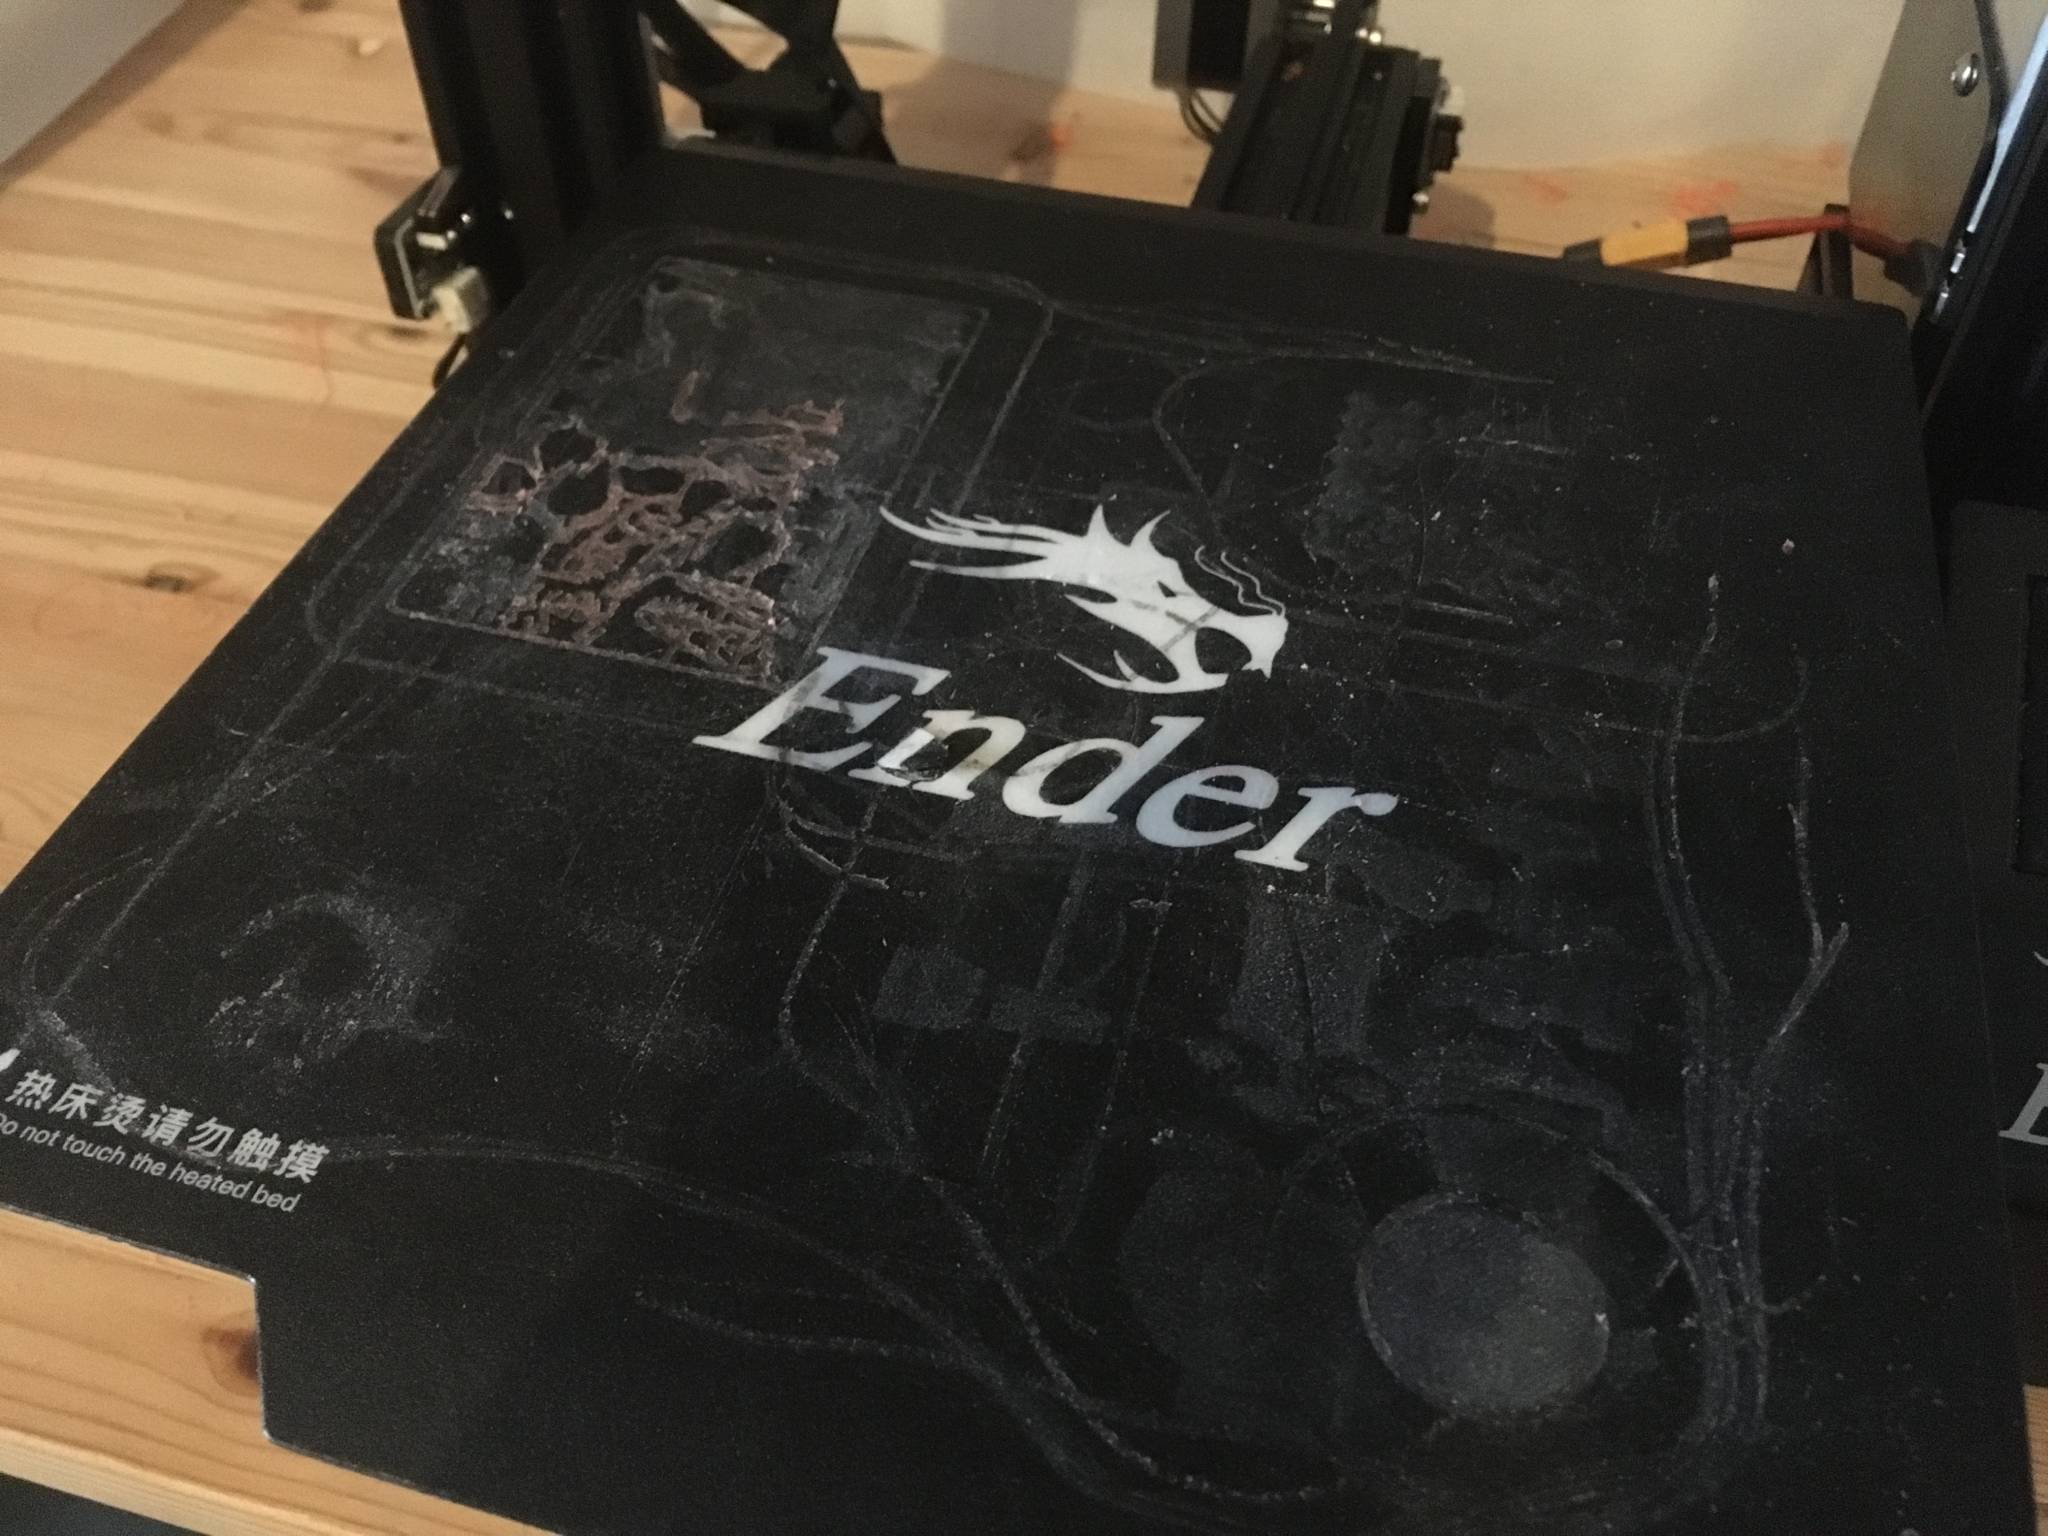 Nettoyage de plateau et réglage pour l'imprimante creality Ender 3 pro -  Blabla - Forum pour les imprimantes 3D et l'impression 3D